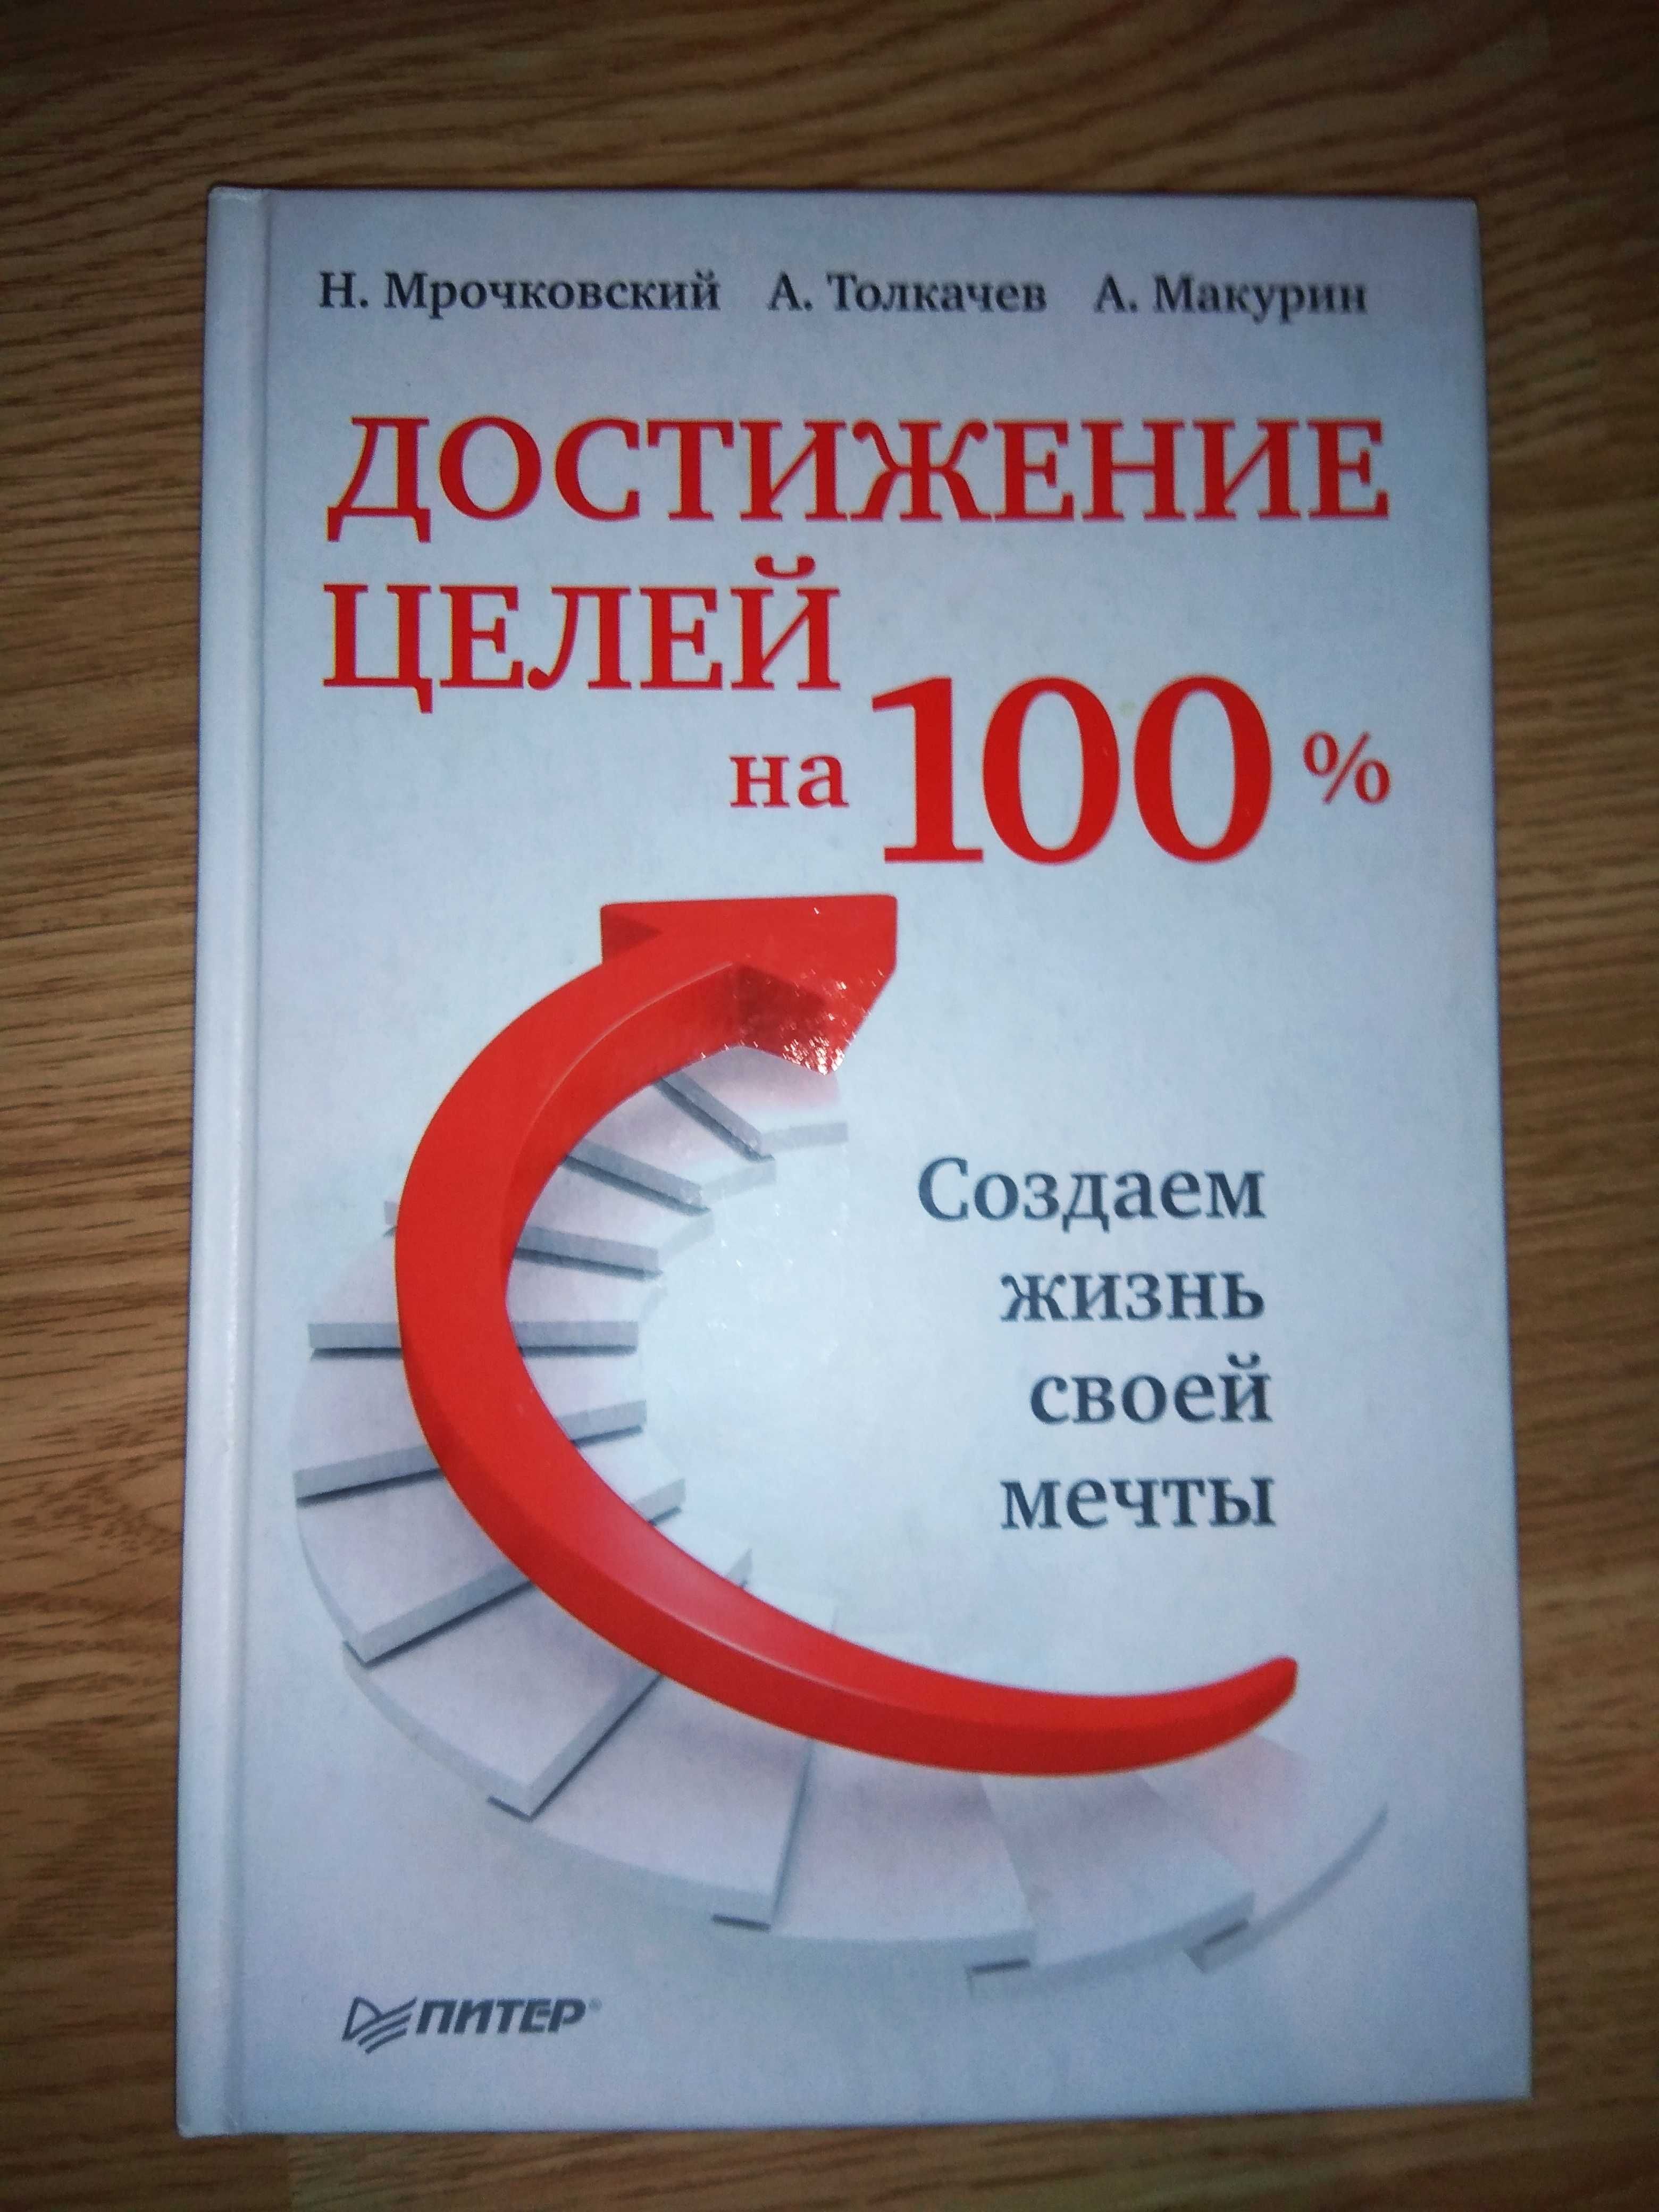 книга достижение целей на 100%